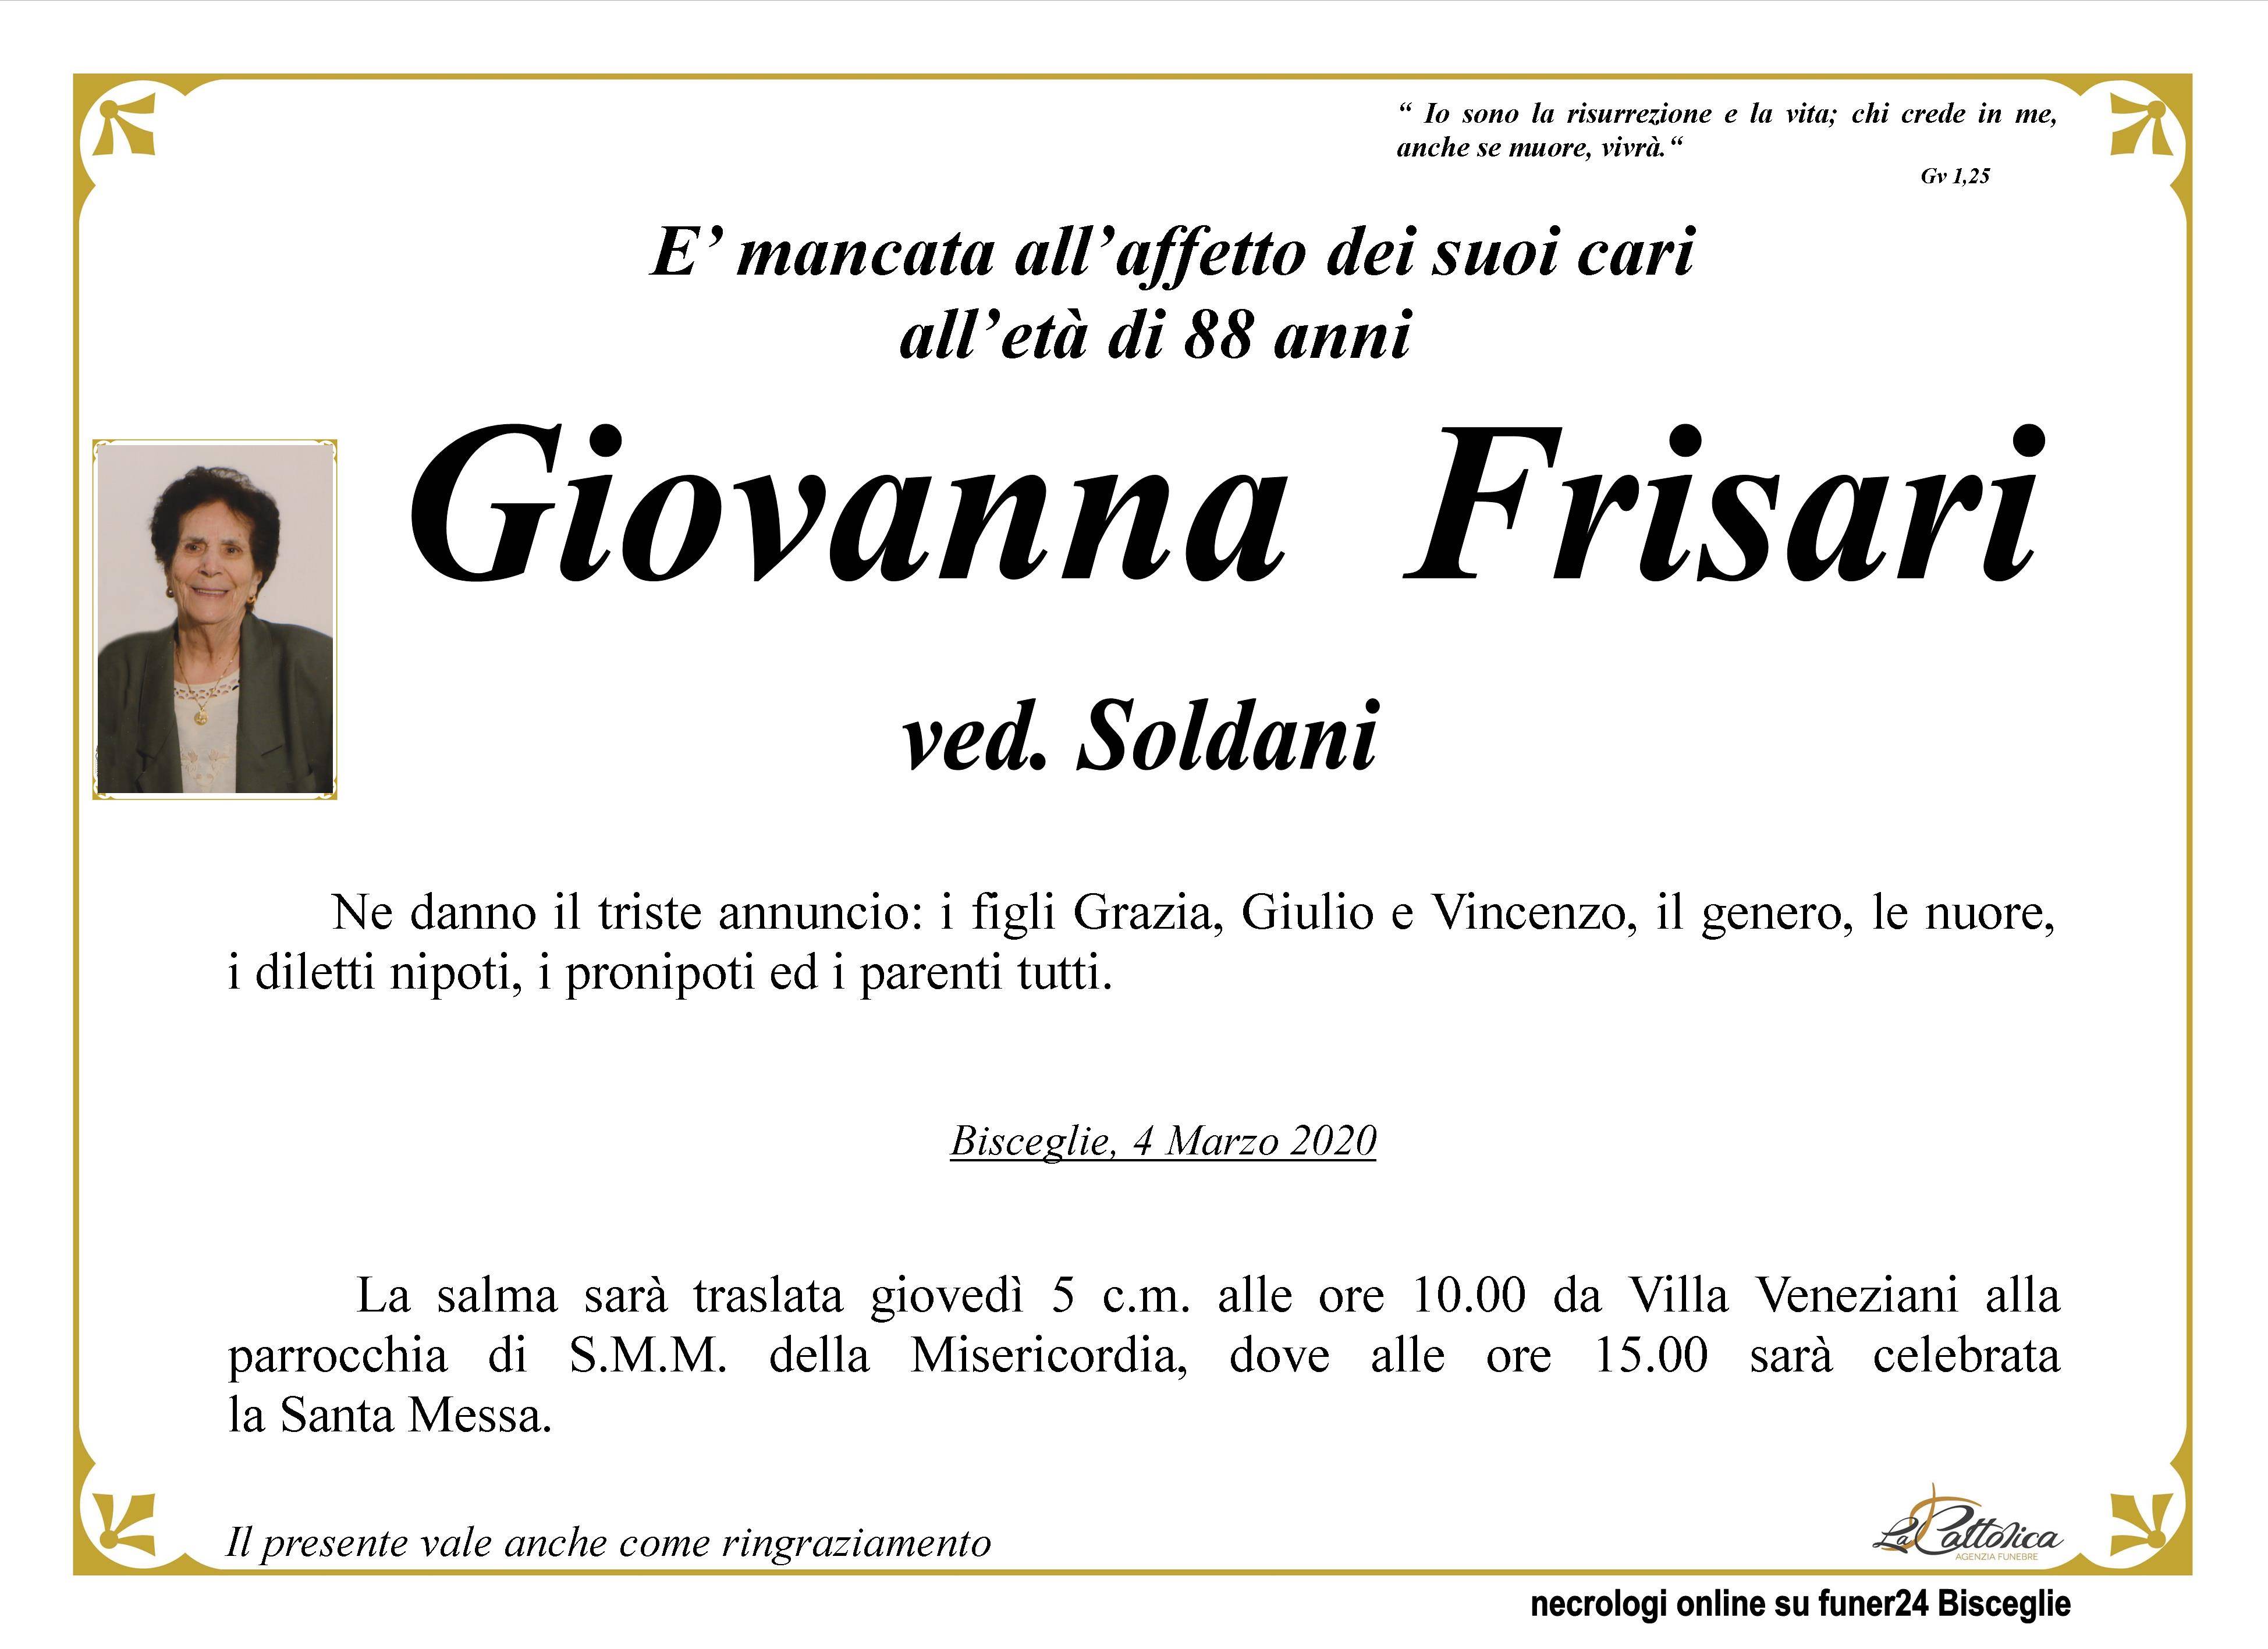 Giovanna Frisari